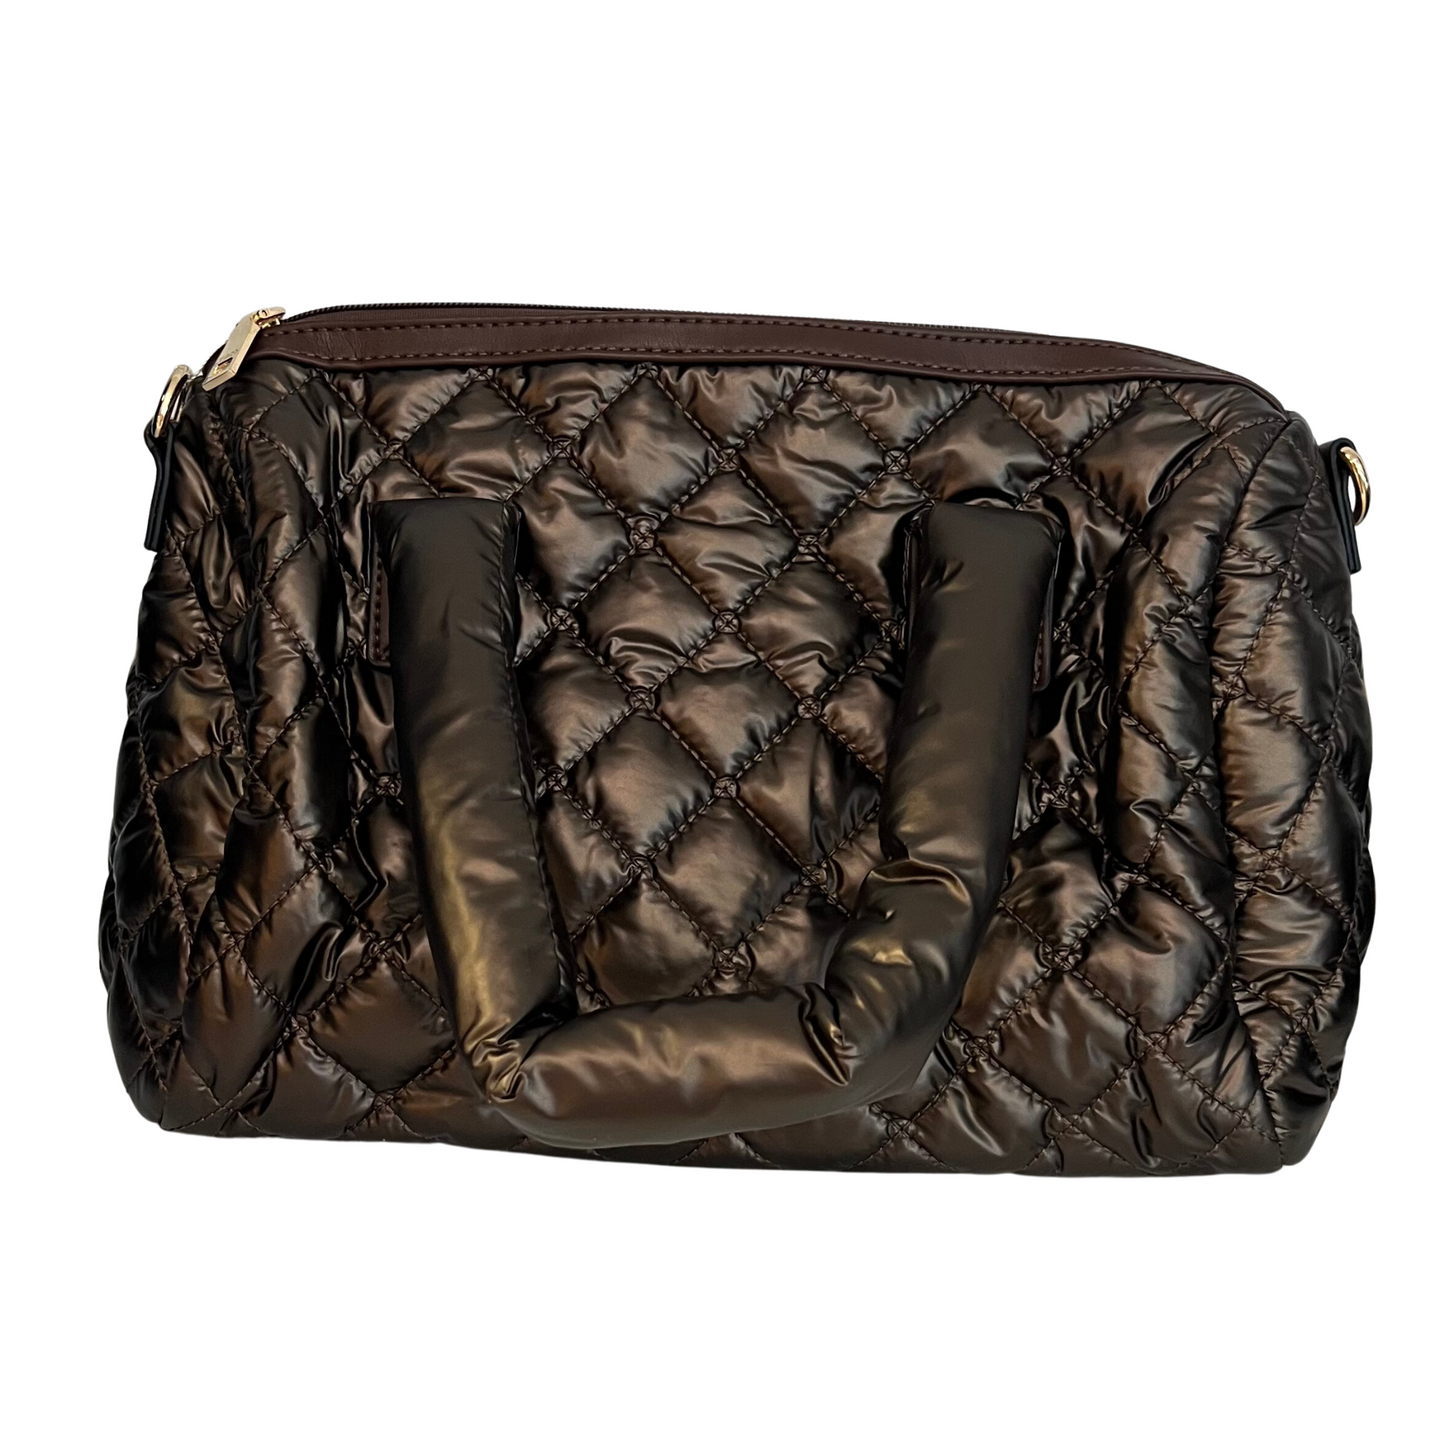 Trista handbag in a deep chocolate color